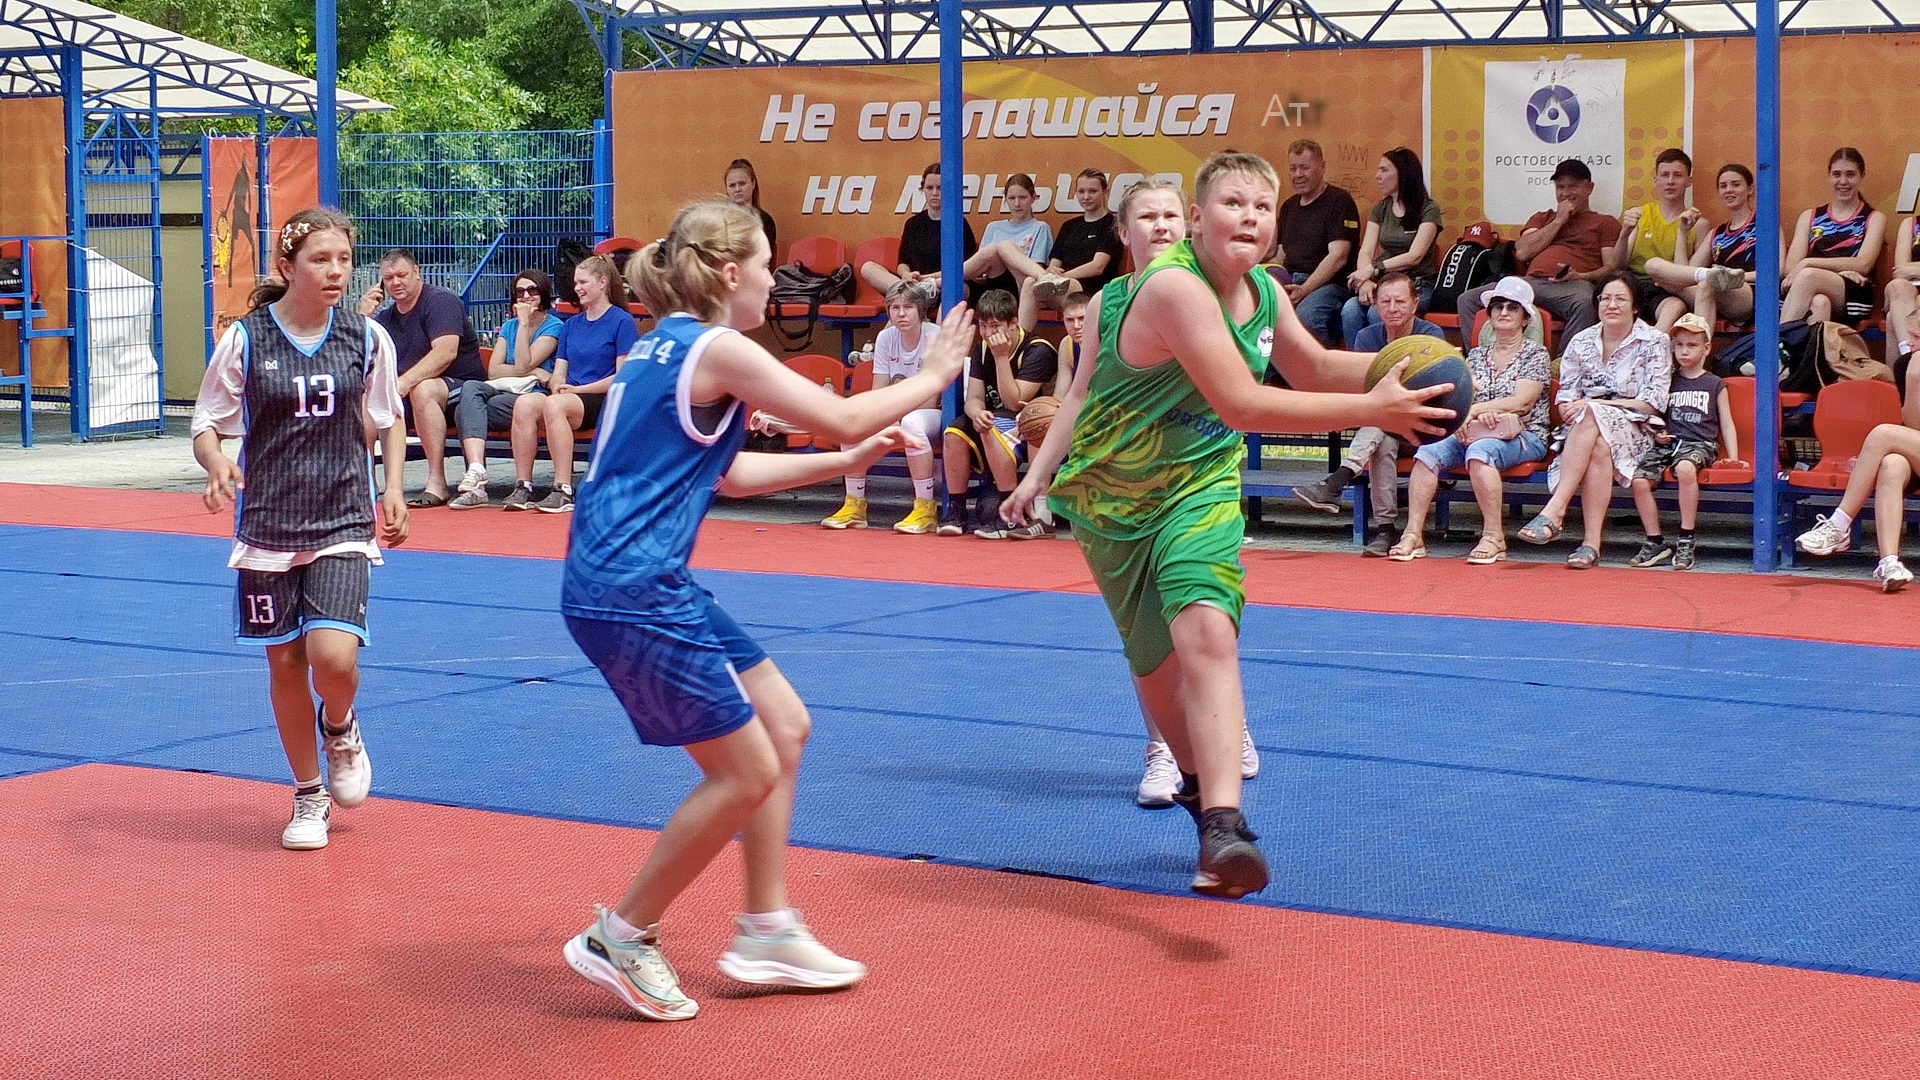 Волгодонск. Баскетбол 3х3 в день защиты детей